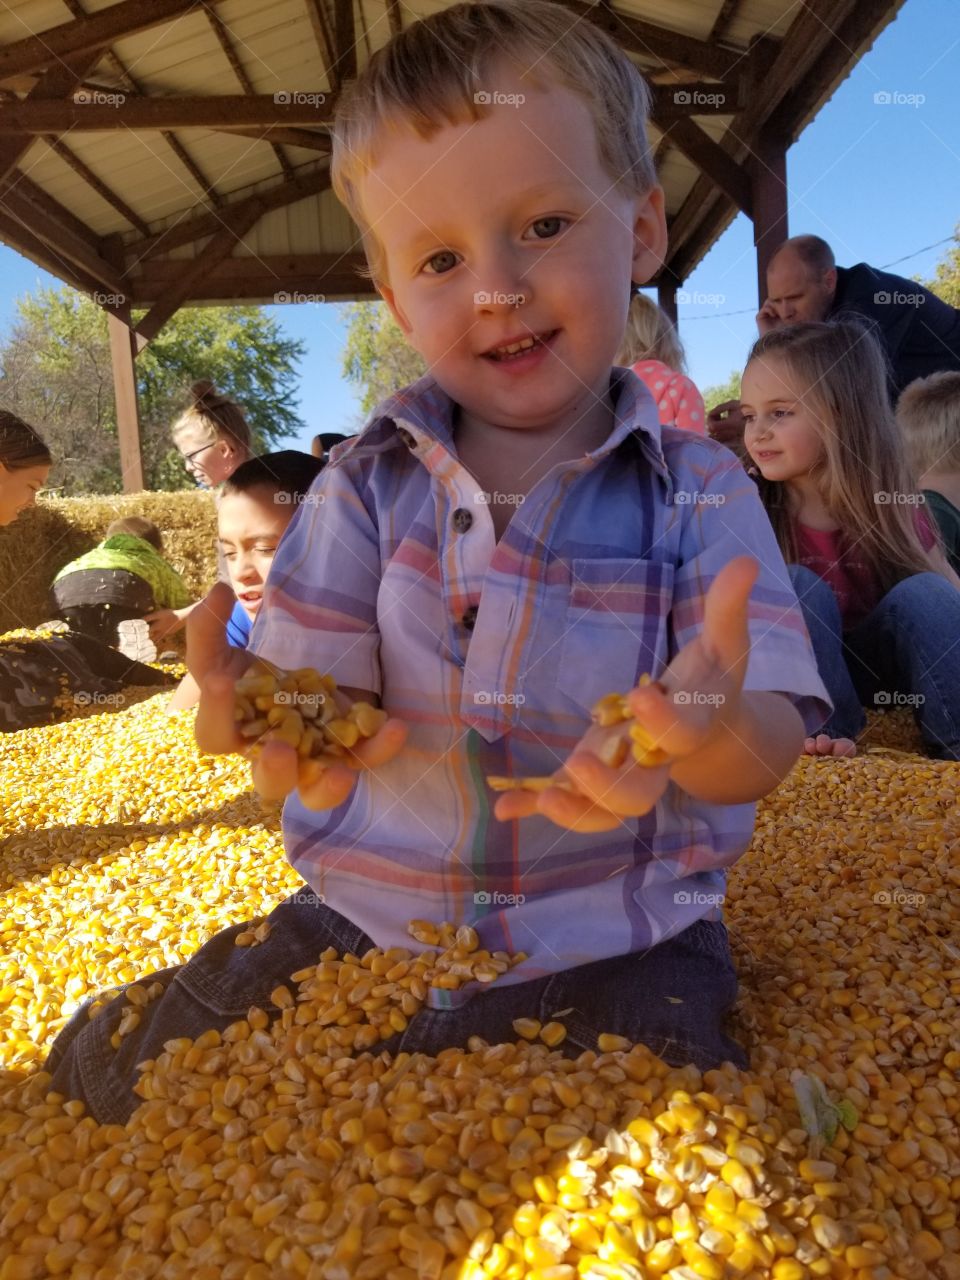 playing in corn